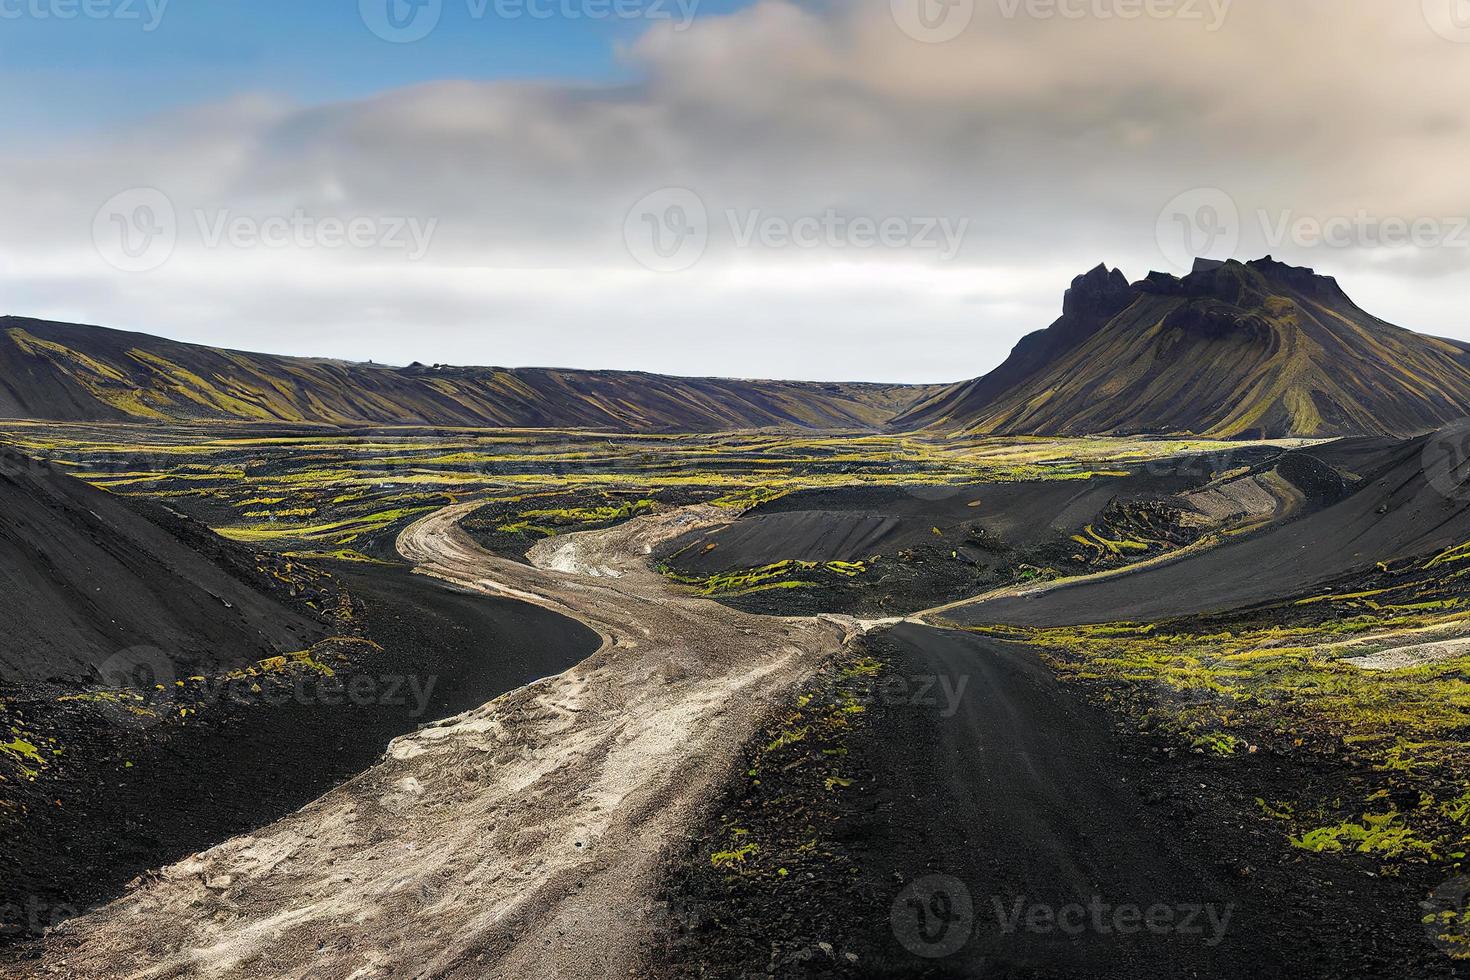 schöne landmannalaugar kiesstaubfahrbahn im hochland von island, europa foto